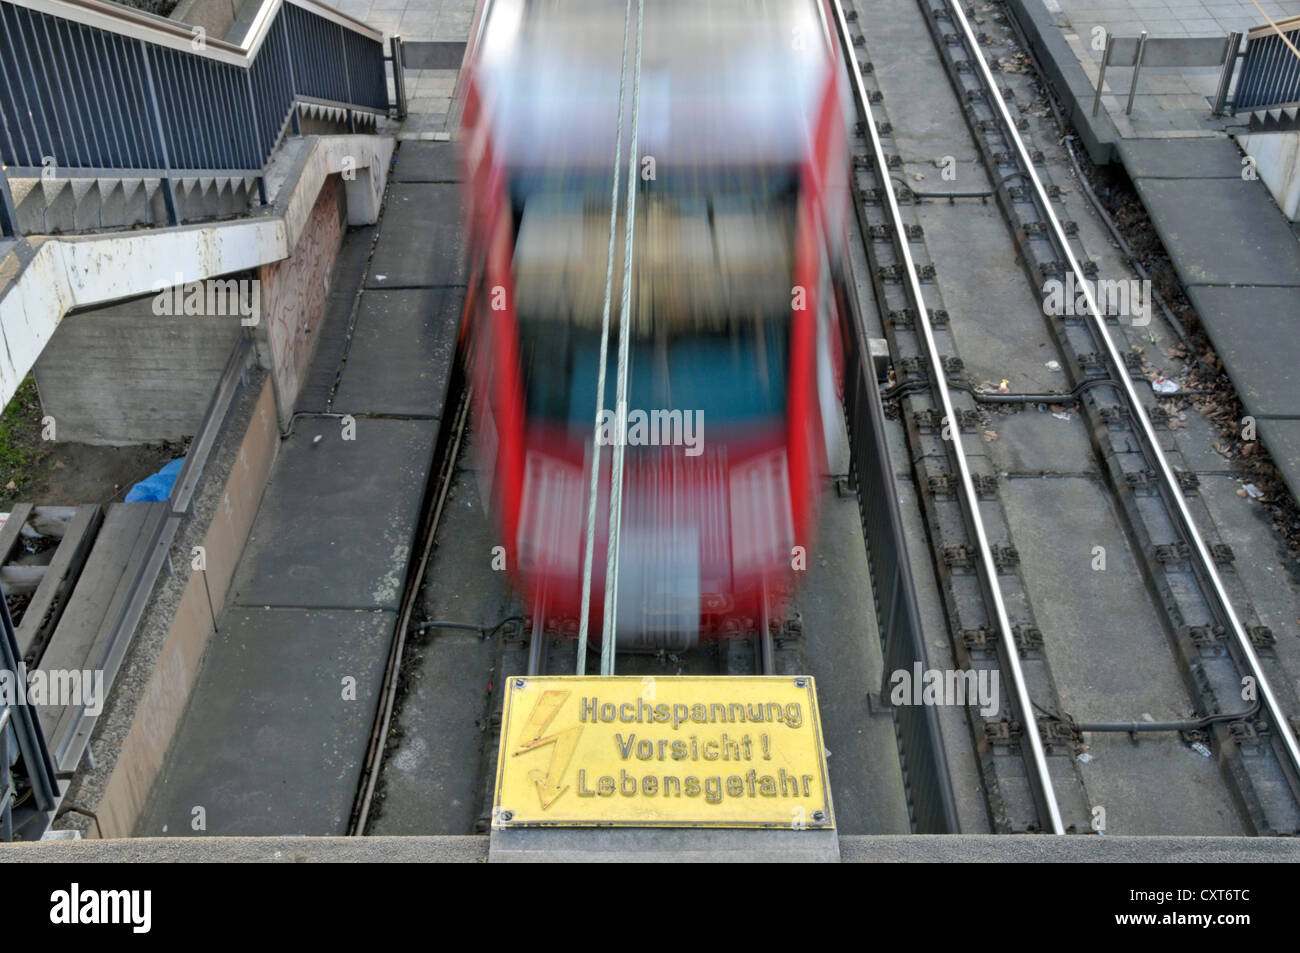 Señal de advertencia, "Hochspannung, Vorsicht Lebensgefahr', Alemán para 'Danger, alto voltaje', tranvía, Colonia, Renania del Norte-Westfalia Foto de stock